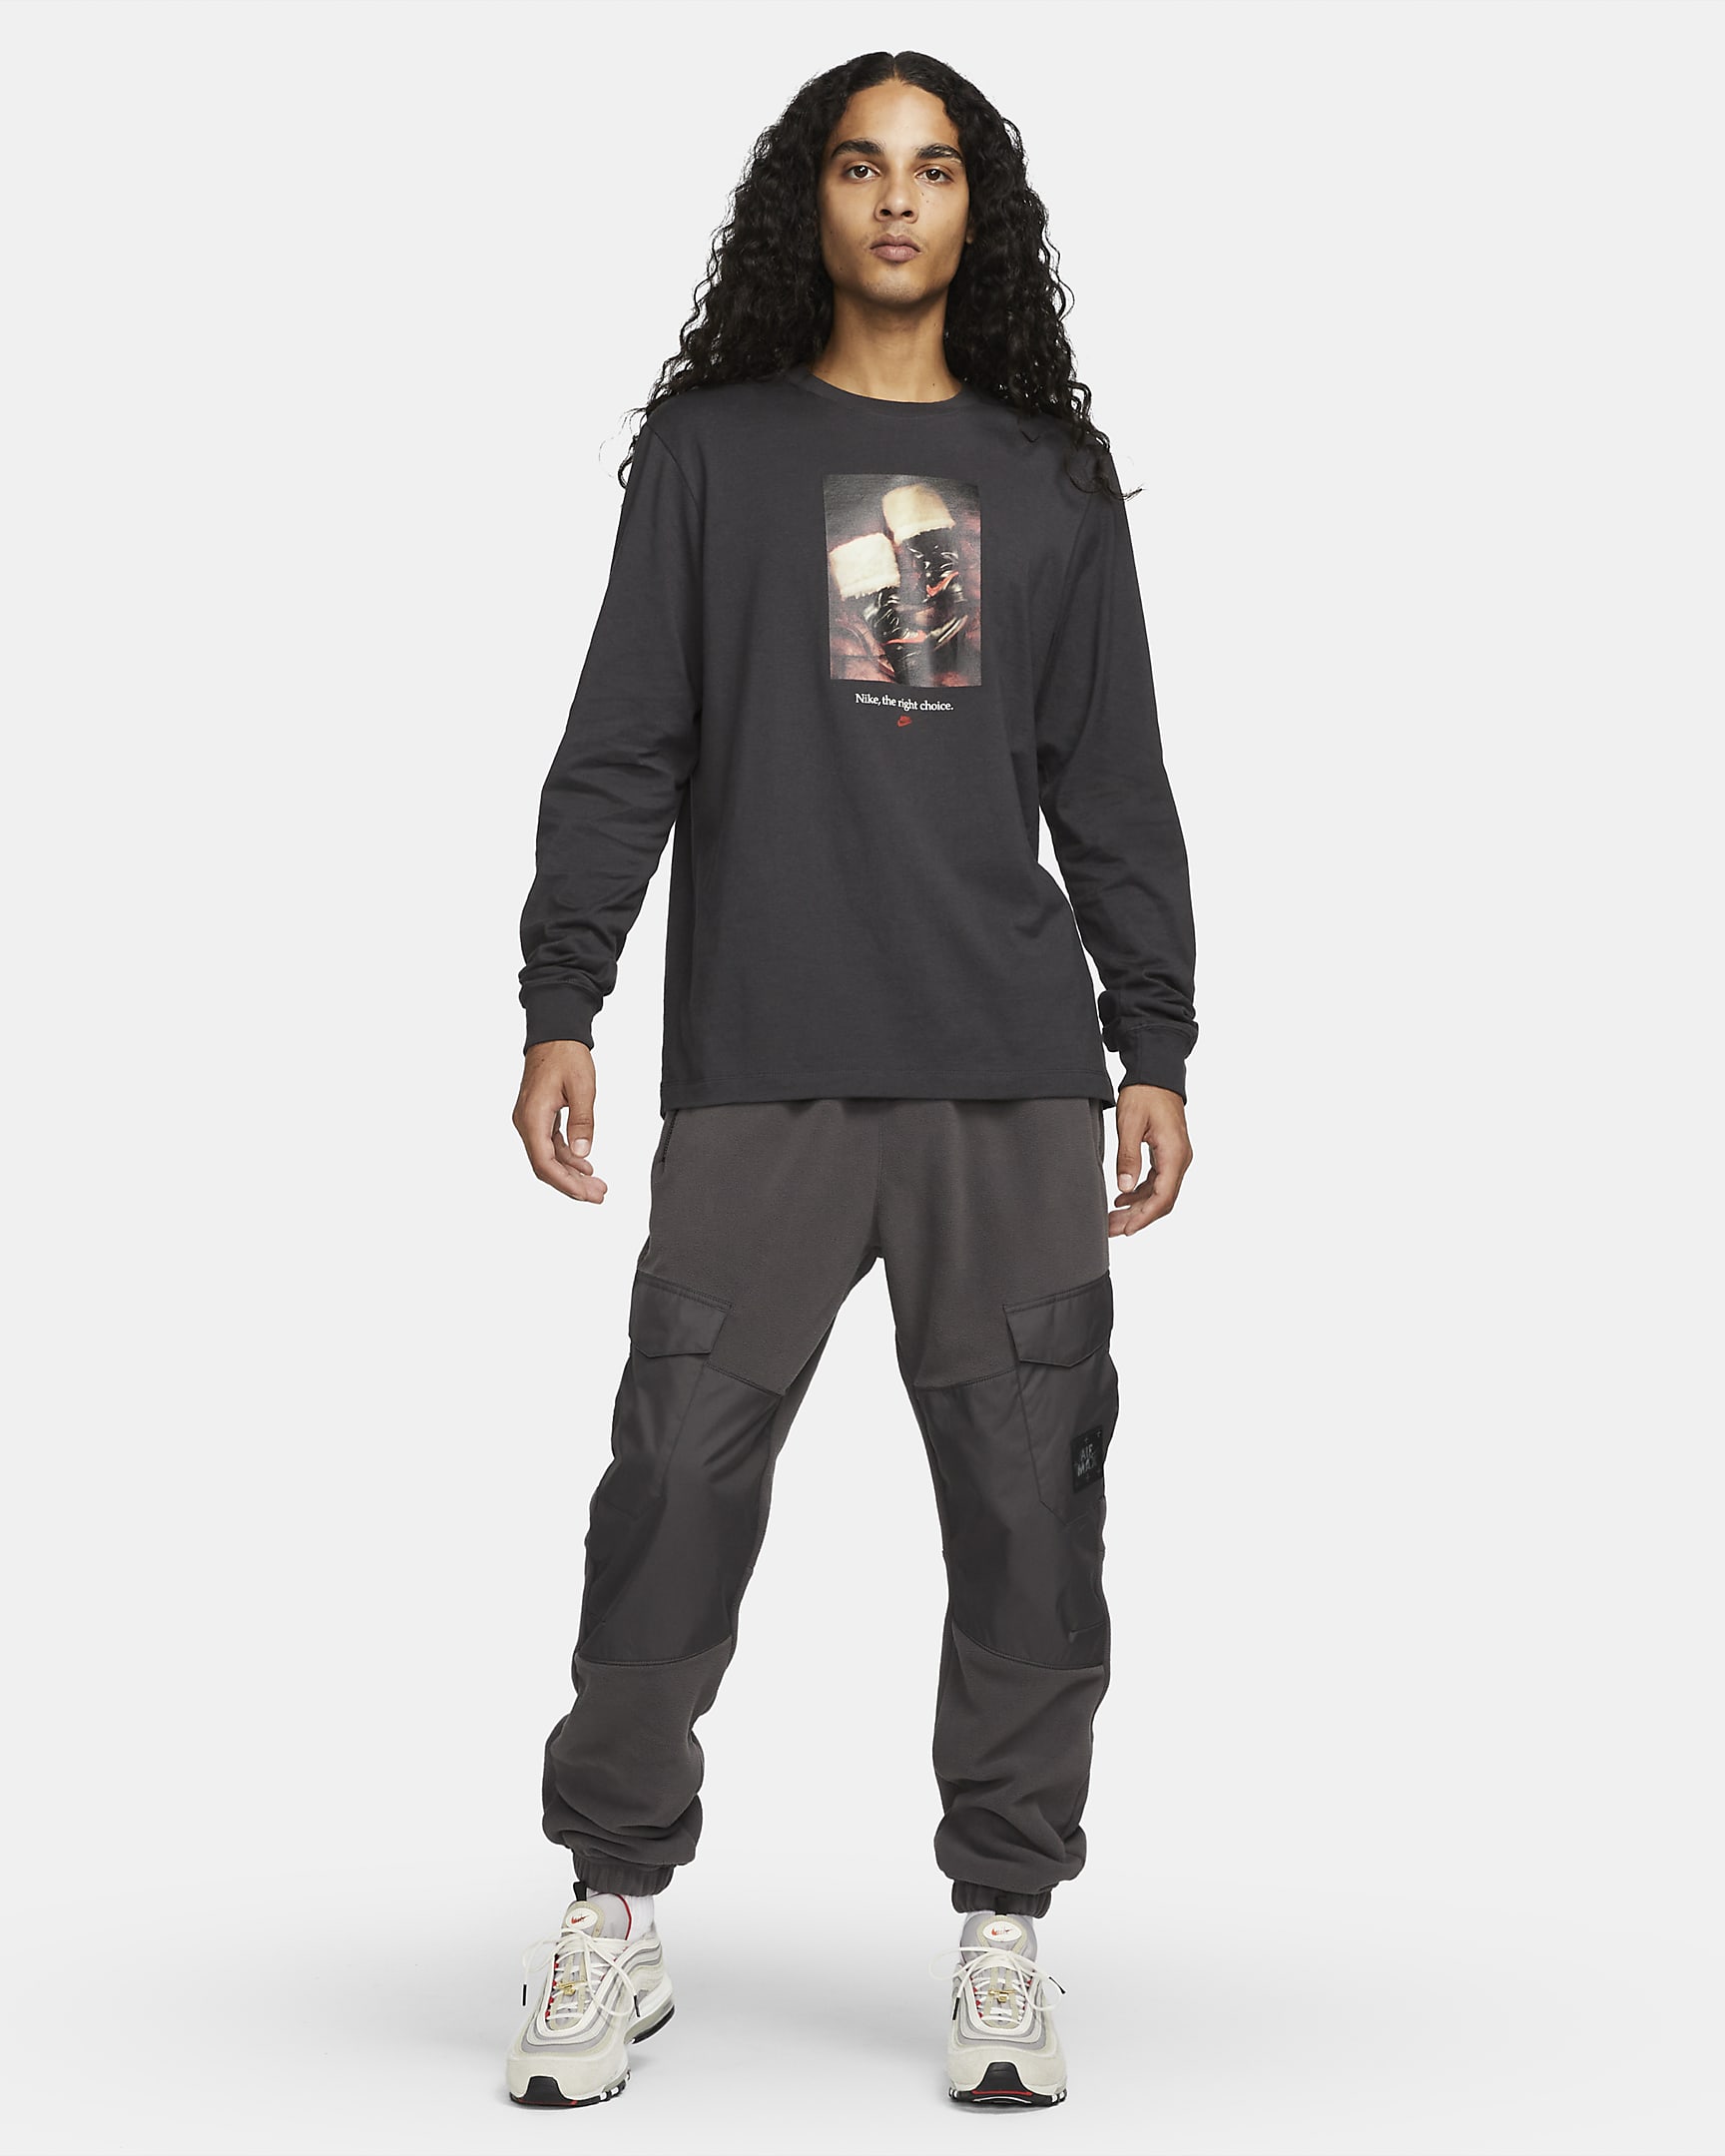 Nike Sportswear Men's Long-Sleeve Collectible T-Shirt. Nike.com